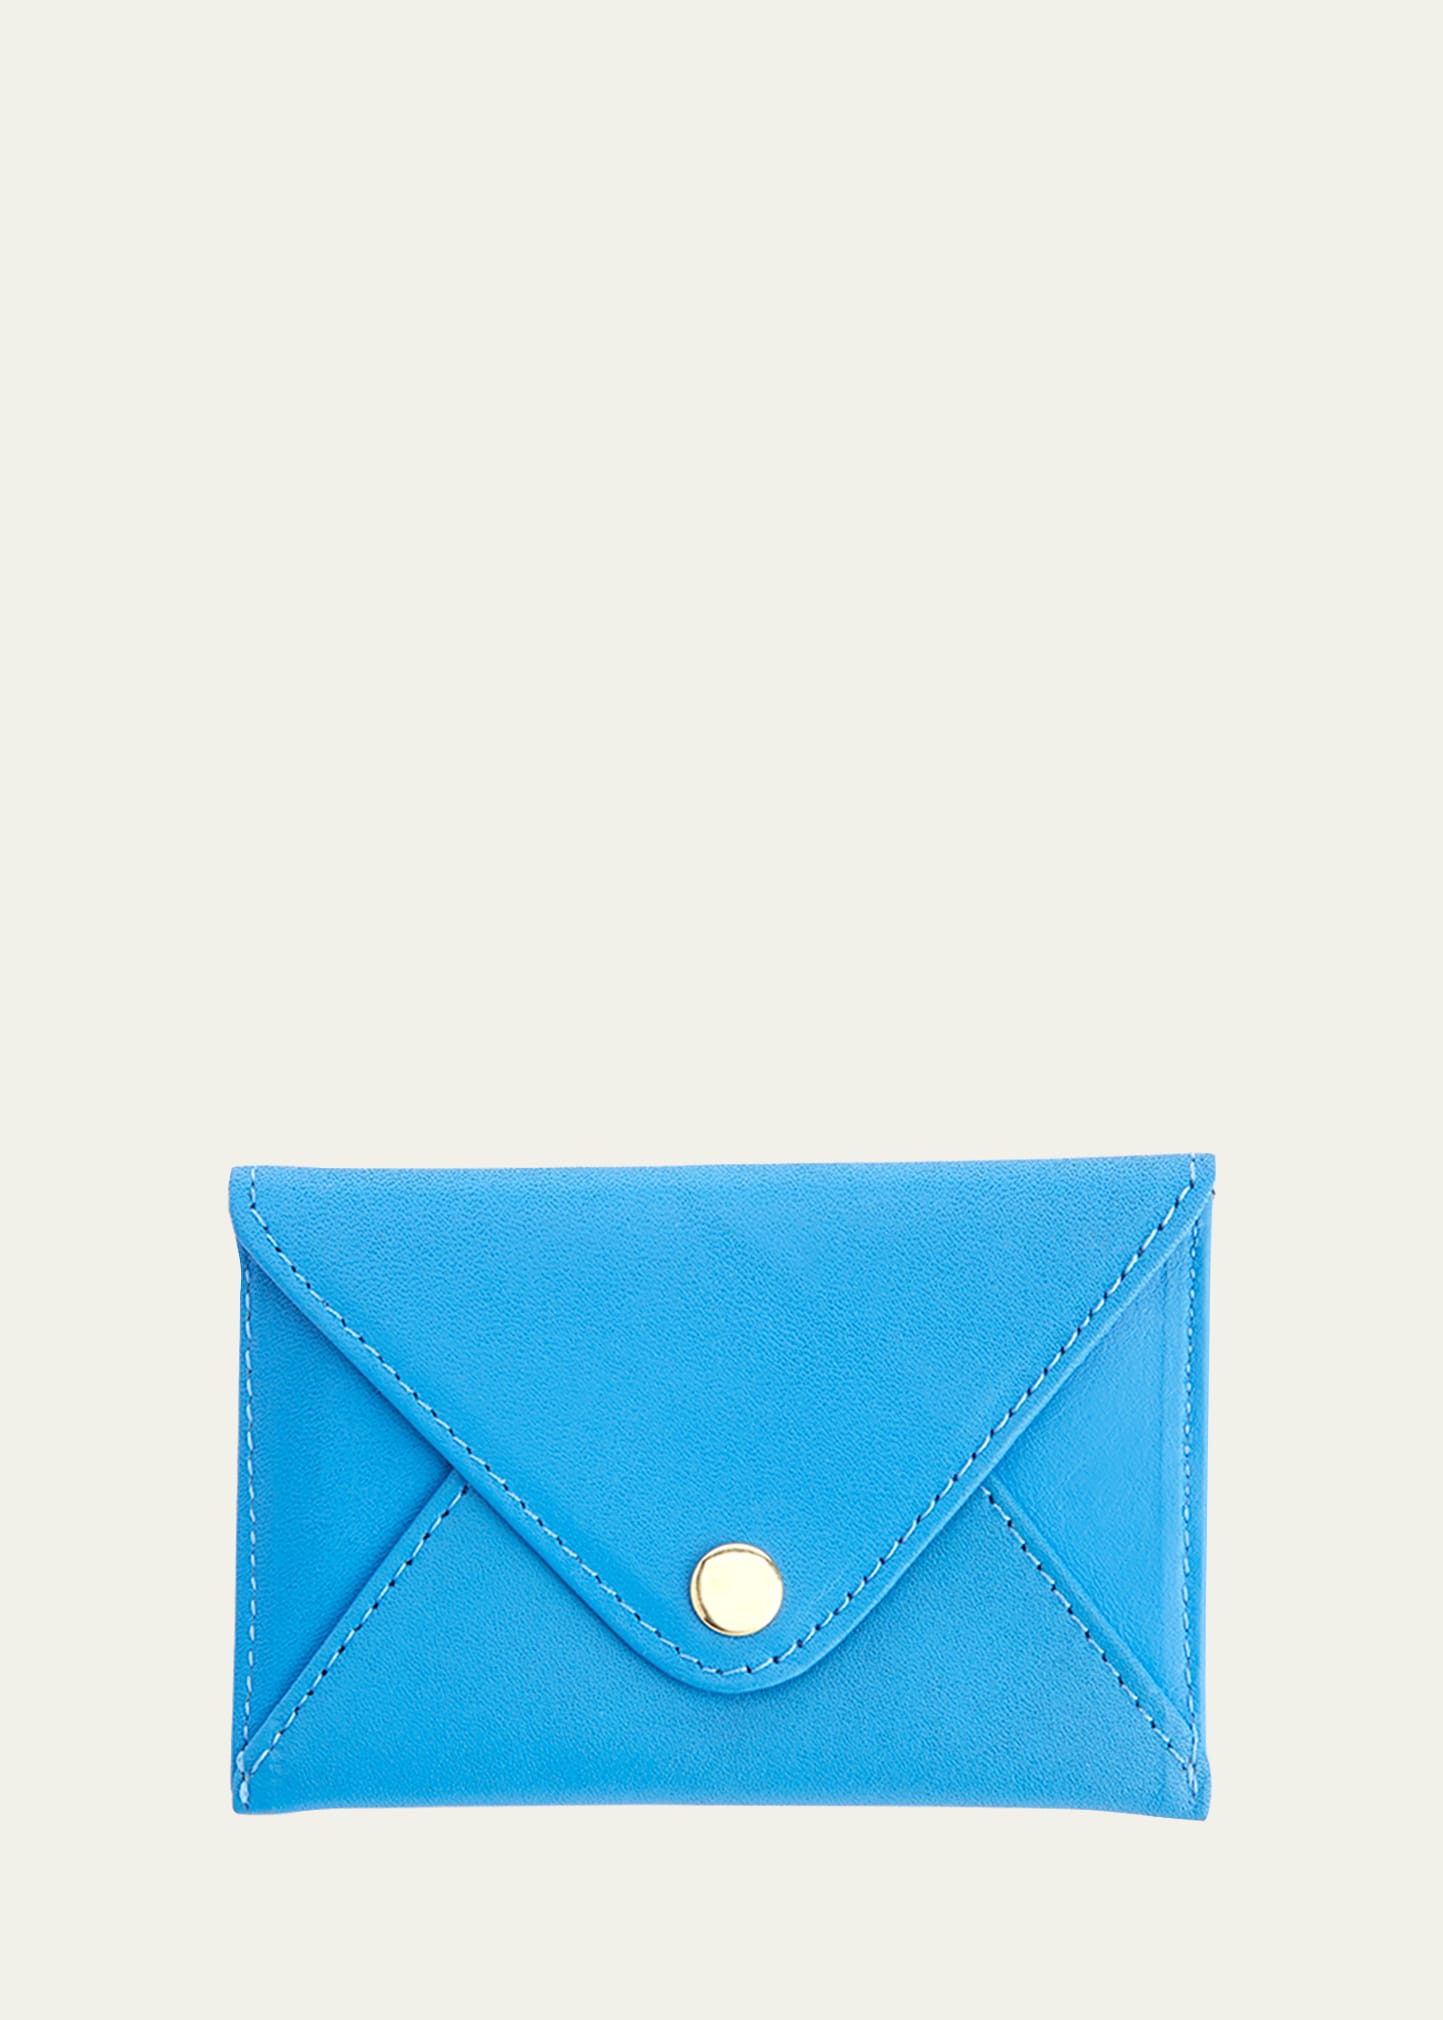 Royce New York Envelope Style Business Card Holder In Light Blue